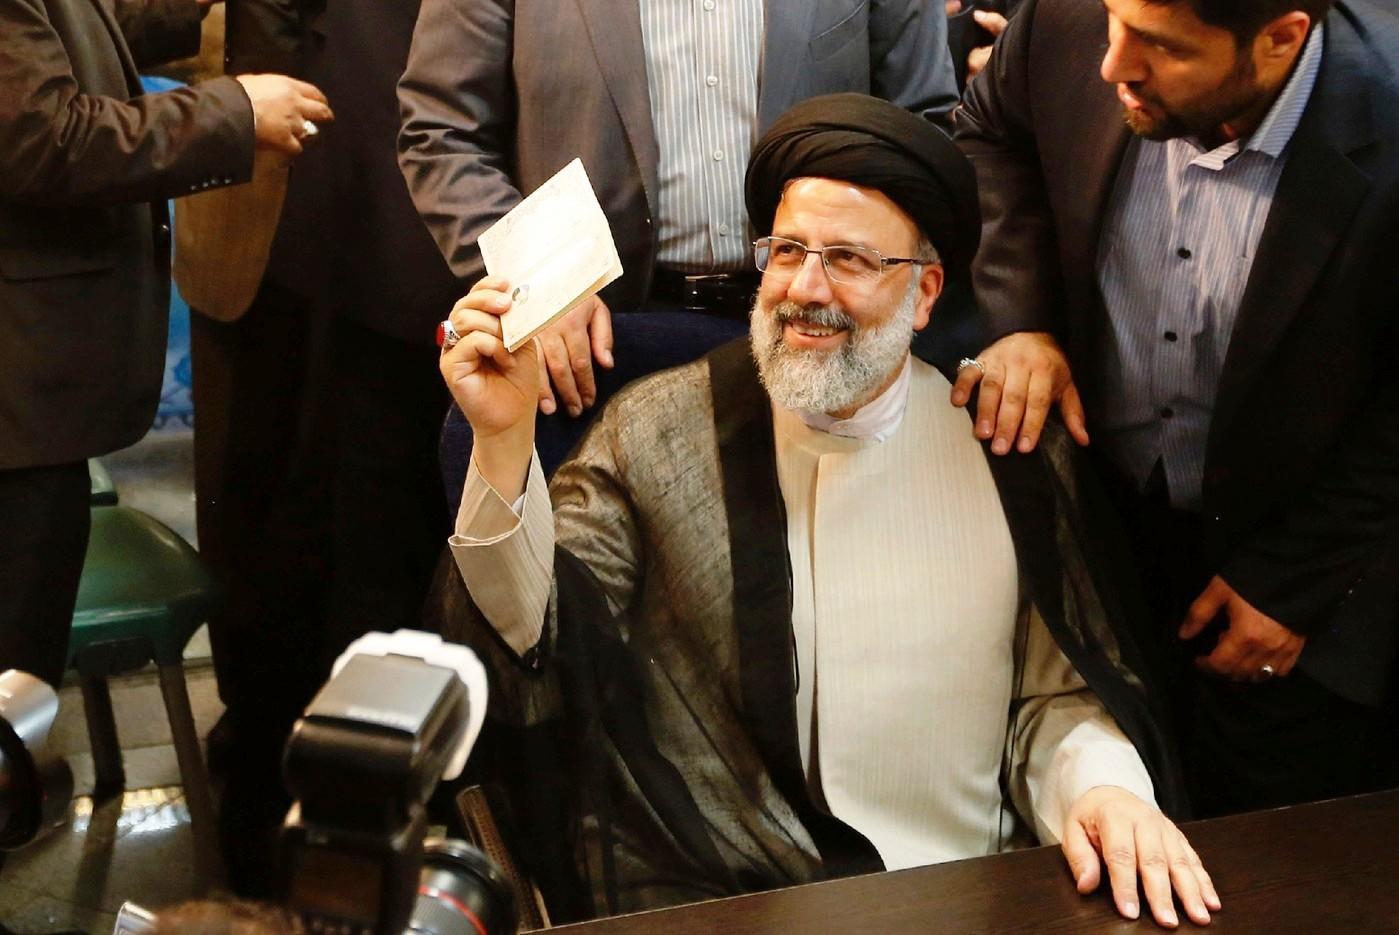 ابرهيم رئيسي رئيس السلطة القضائية في ايران